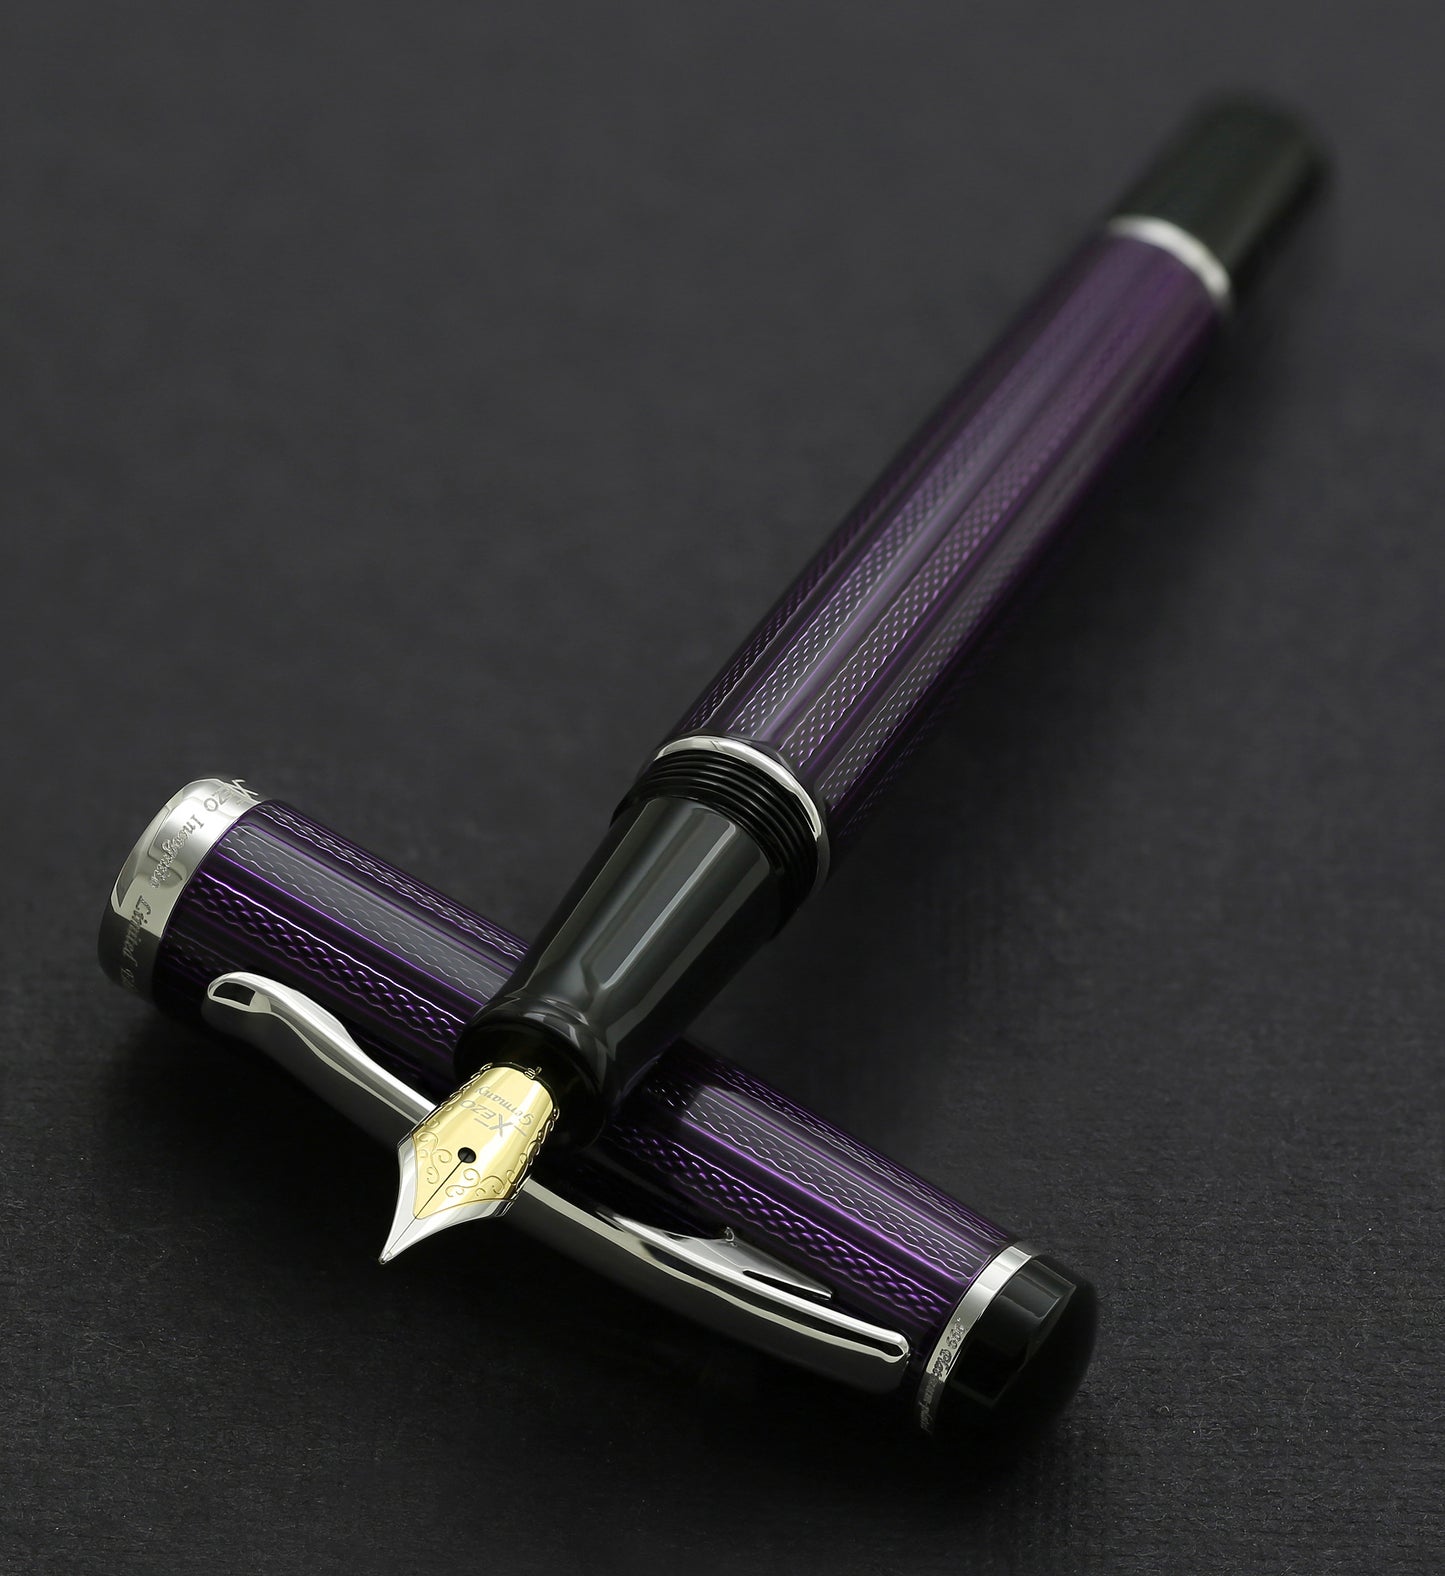 Xezo - Incognito Purple F fountain pen resting on its cap